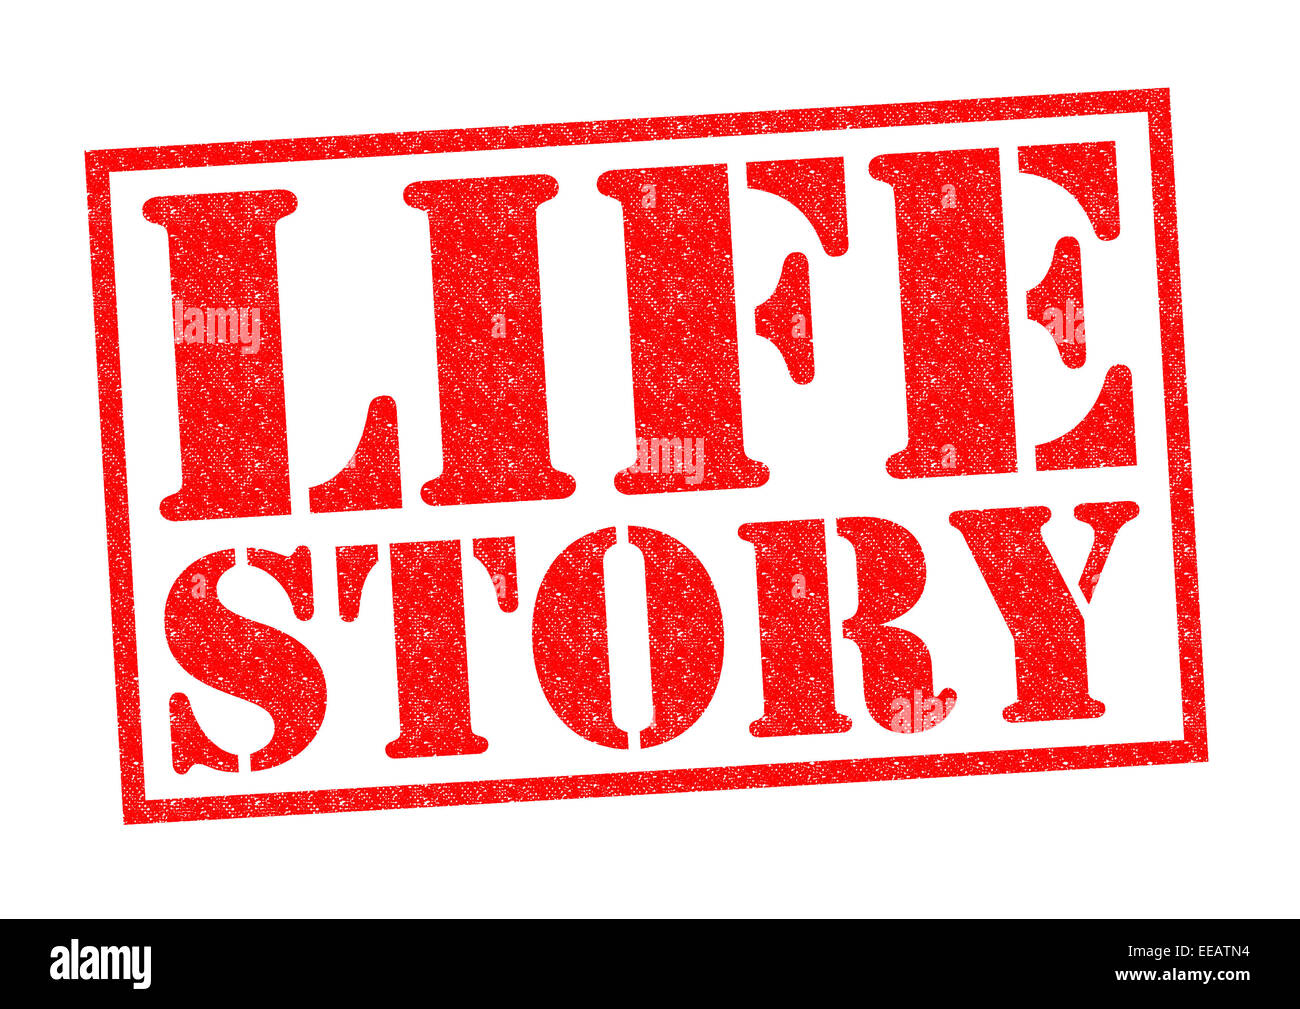 True life story. Life story. History of Life. Life History логотип. The story of my Life.